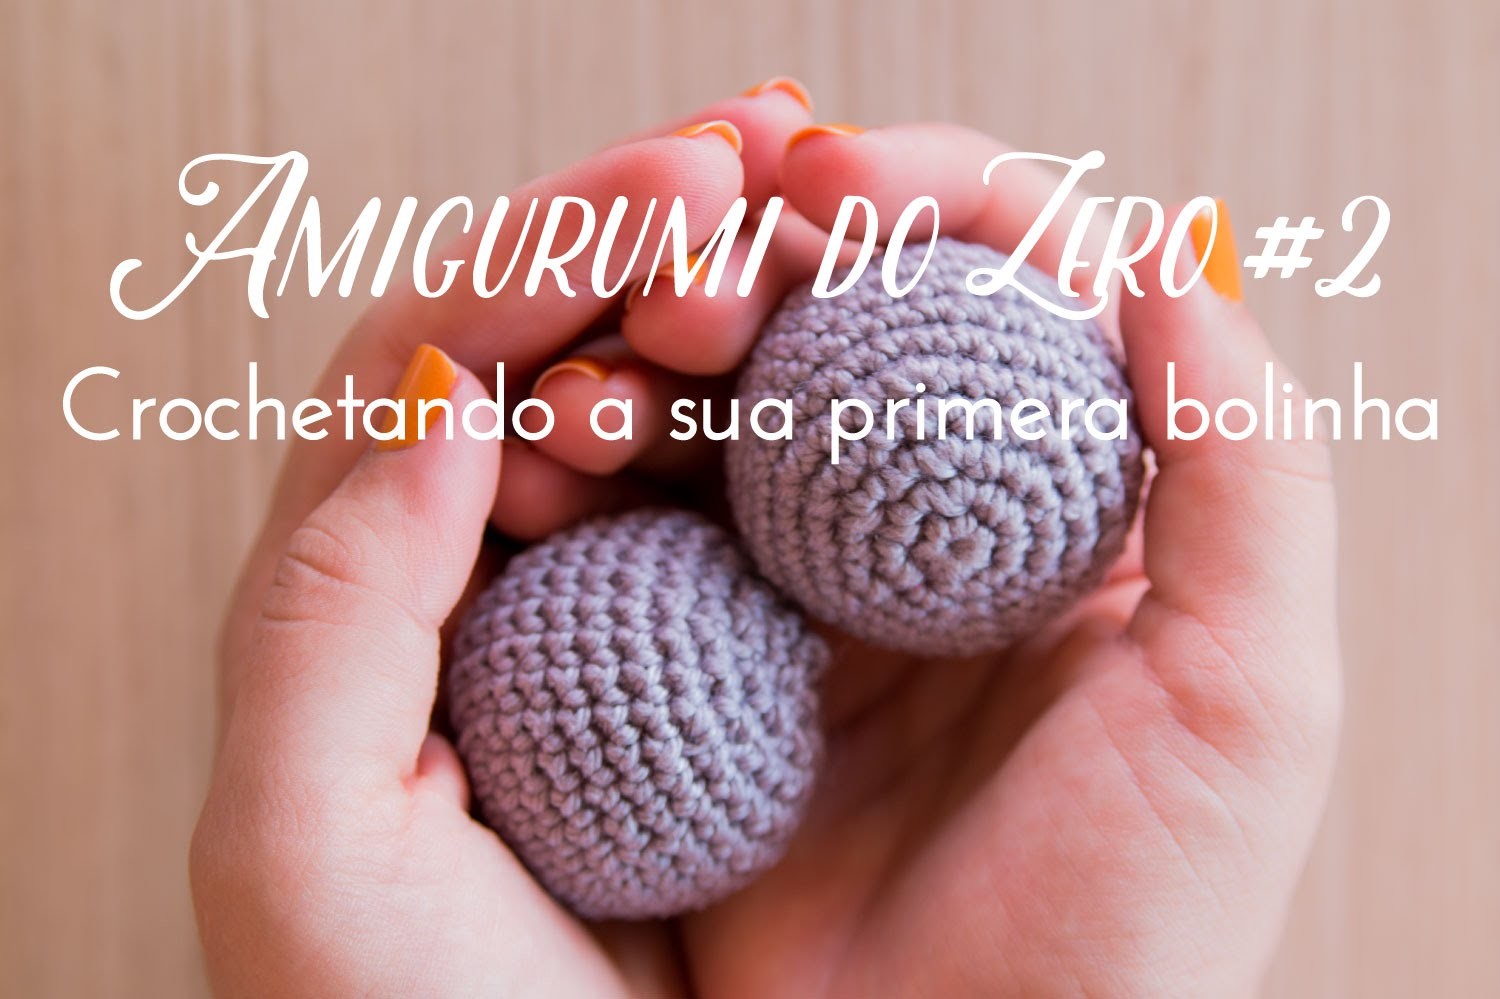 Amigurumi do Zero #2 - Crochetando a sua primeira bolinha